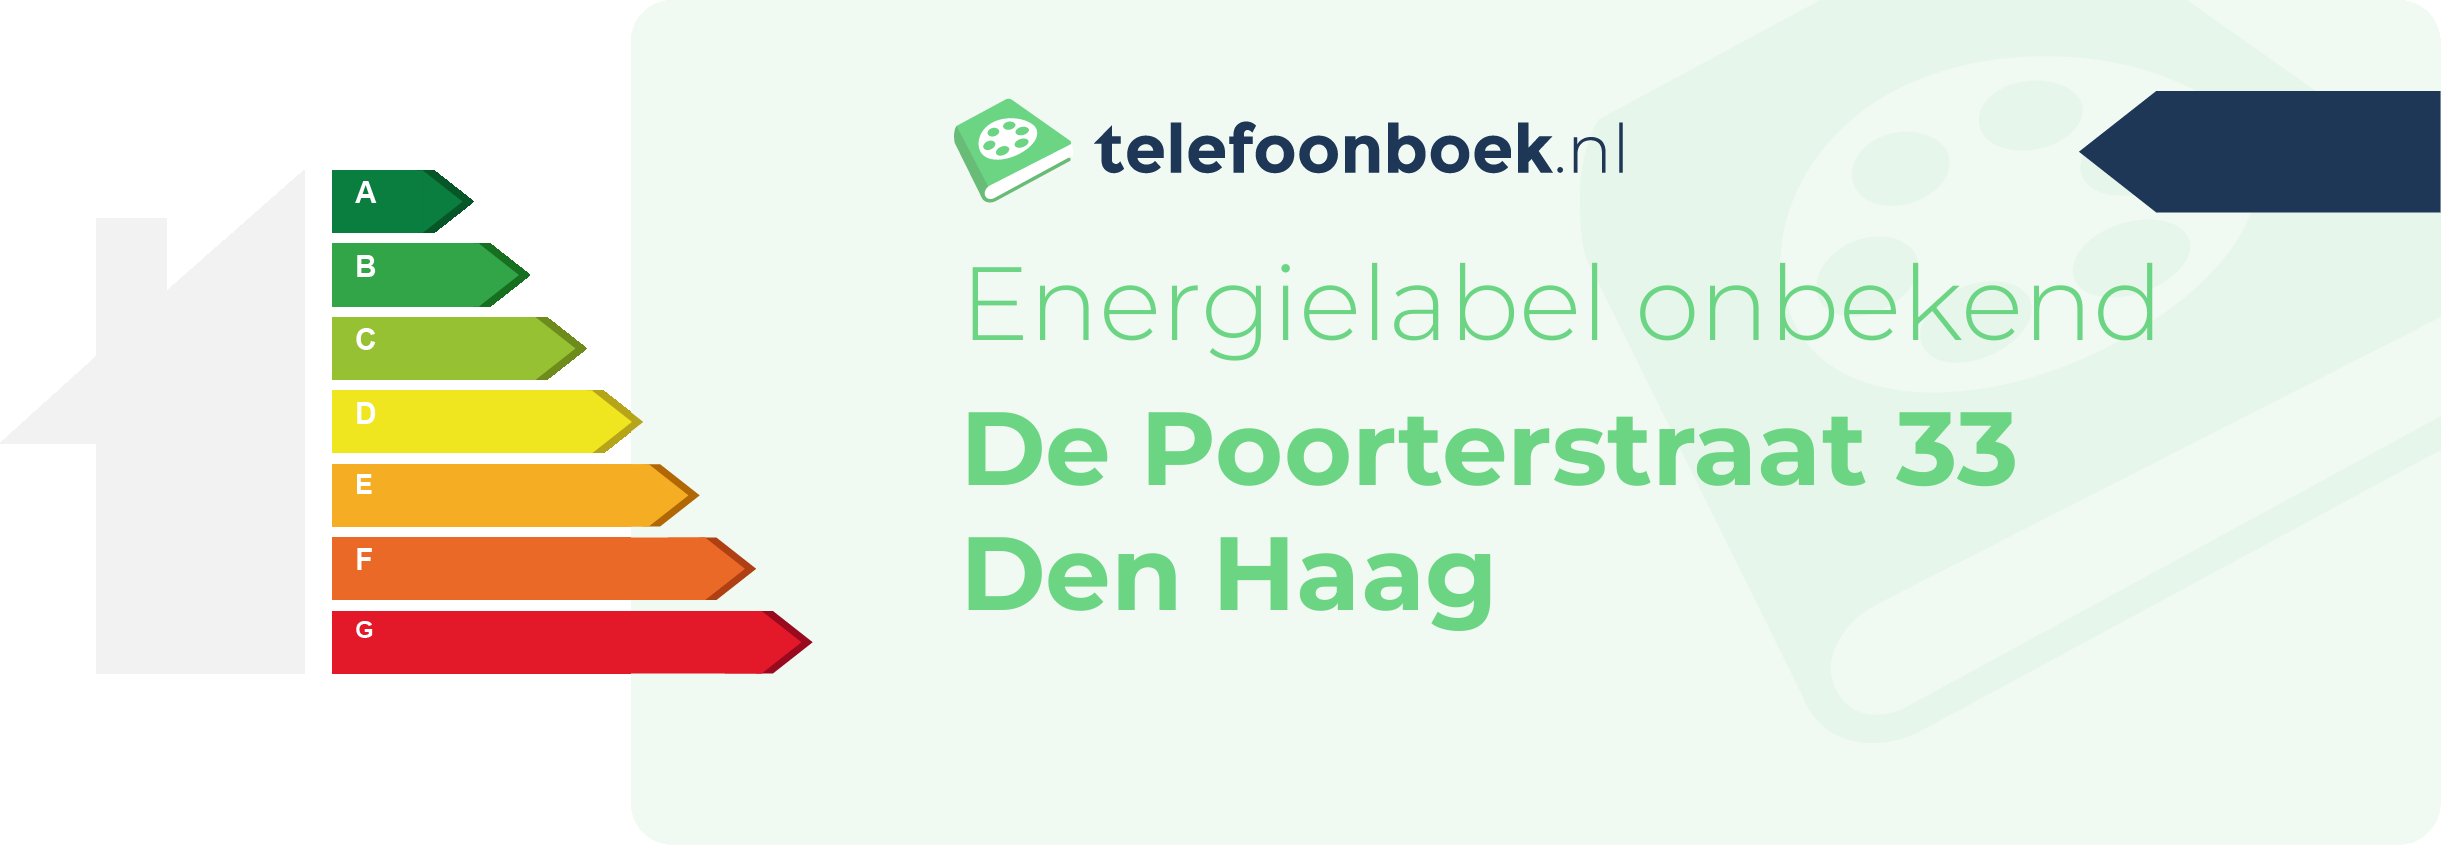 Energielabel De Poorterstraat 33 Den Haag